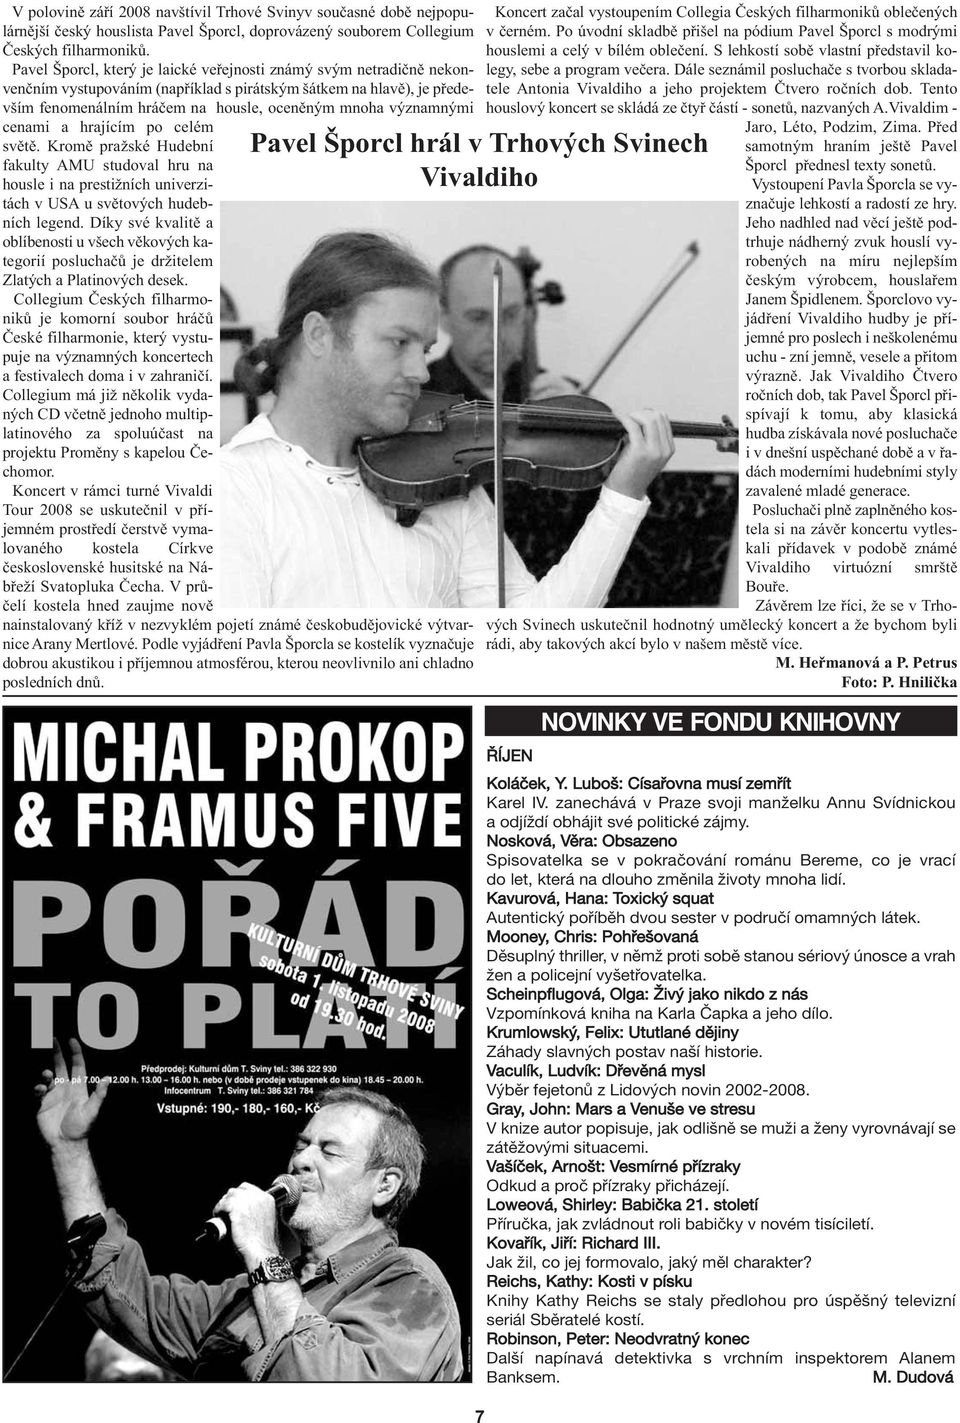 cenami a hrajícím po celém světě. Kromě pražské Hudební fakulty AMU studoval hru na housle i na prestižních univerzitách v USA u světových hudebních legend.